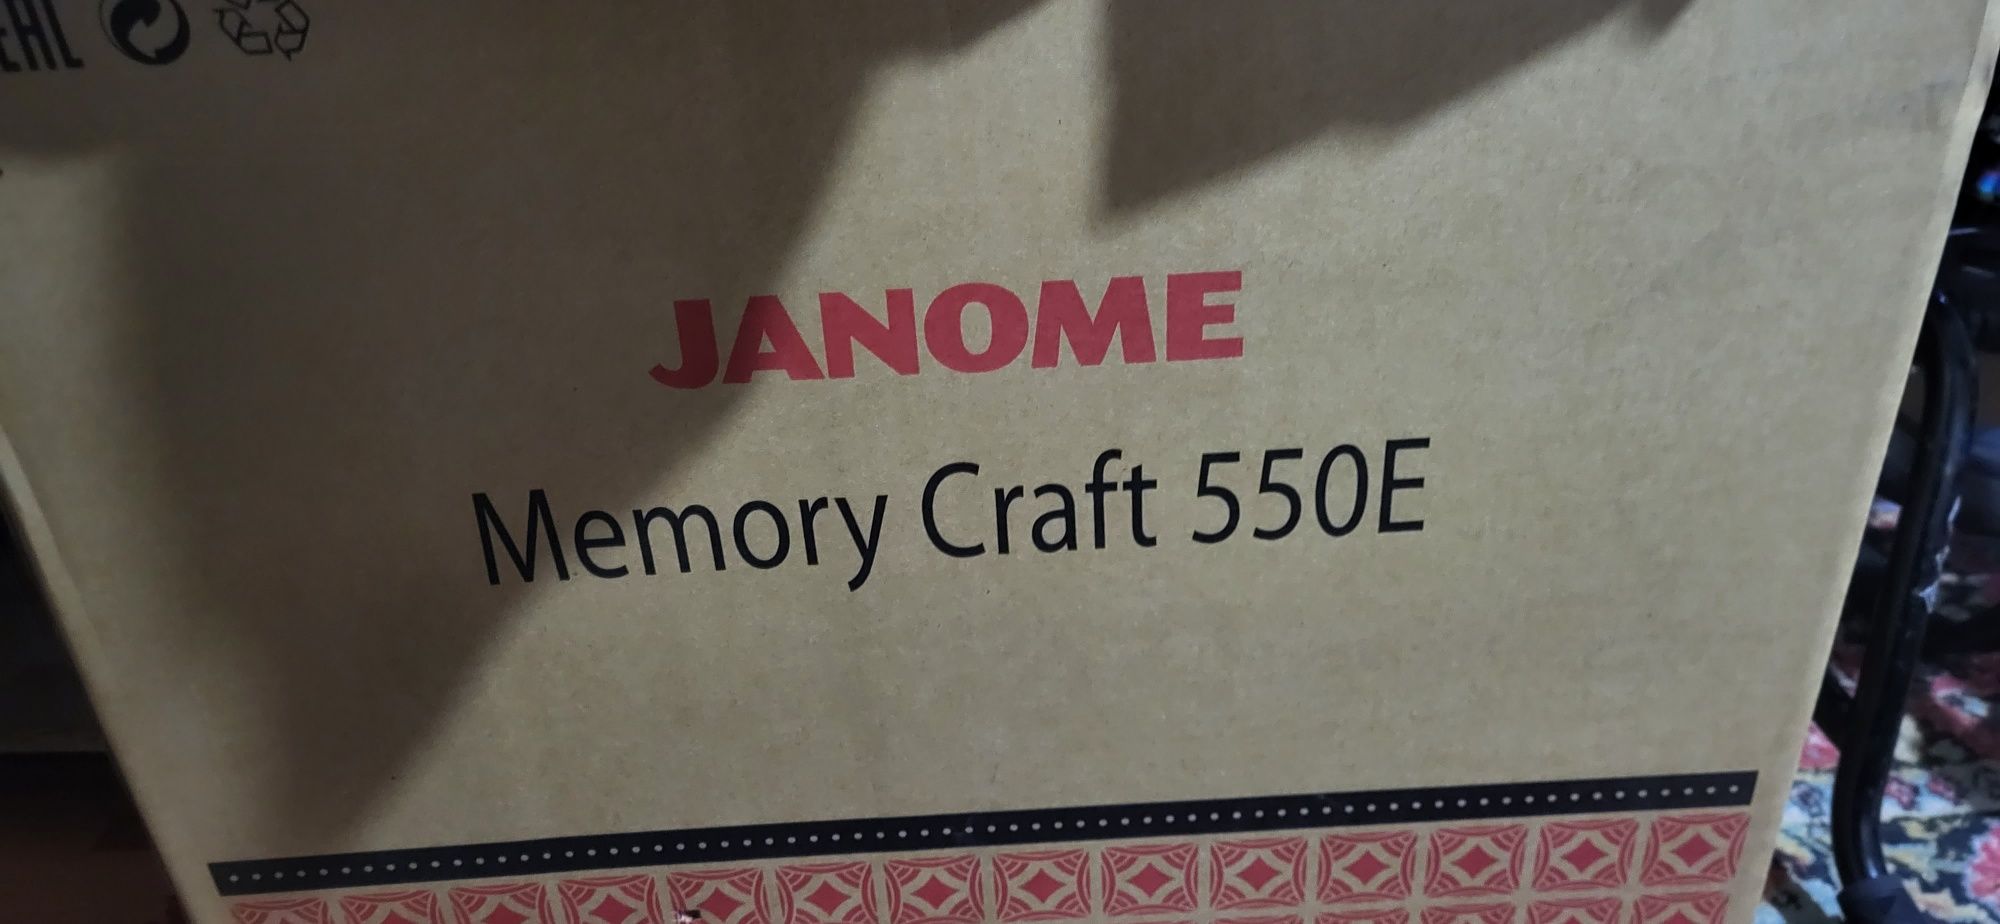 Вышивальная машина Janome memorycraft 550e